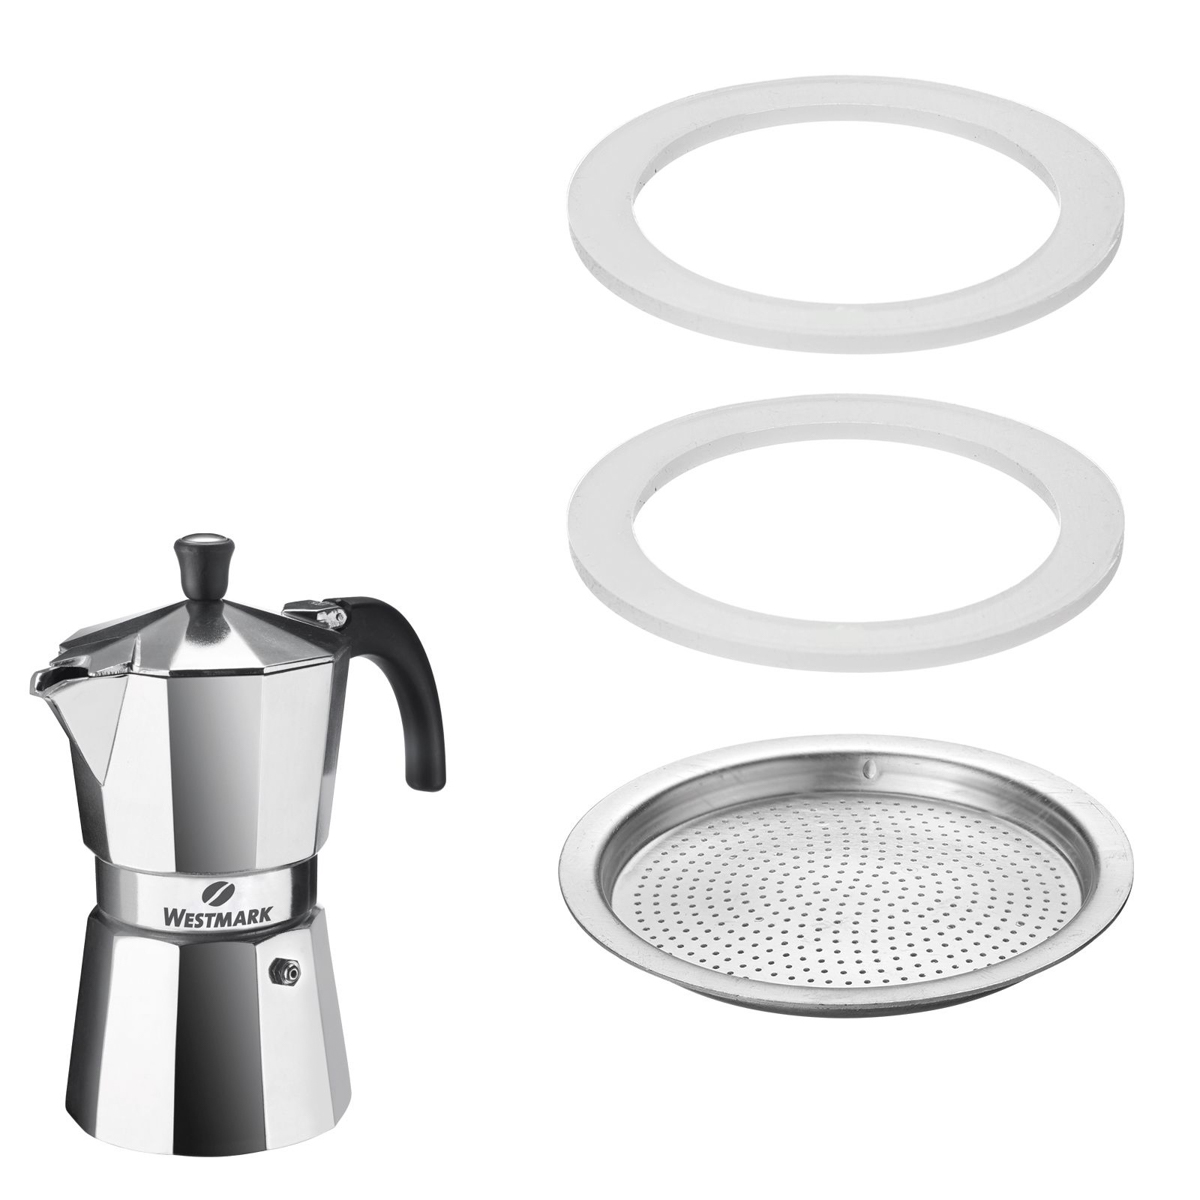 2 Silikondichtringe und 1 Filterplättchen für Espressokocher Art.-Nr. 24622260